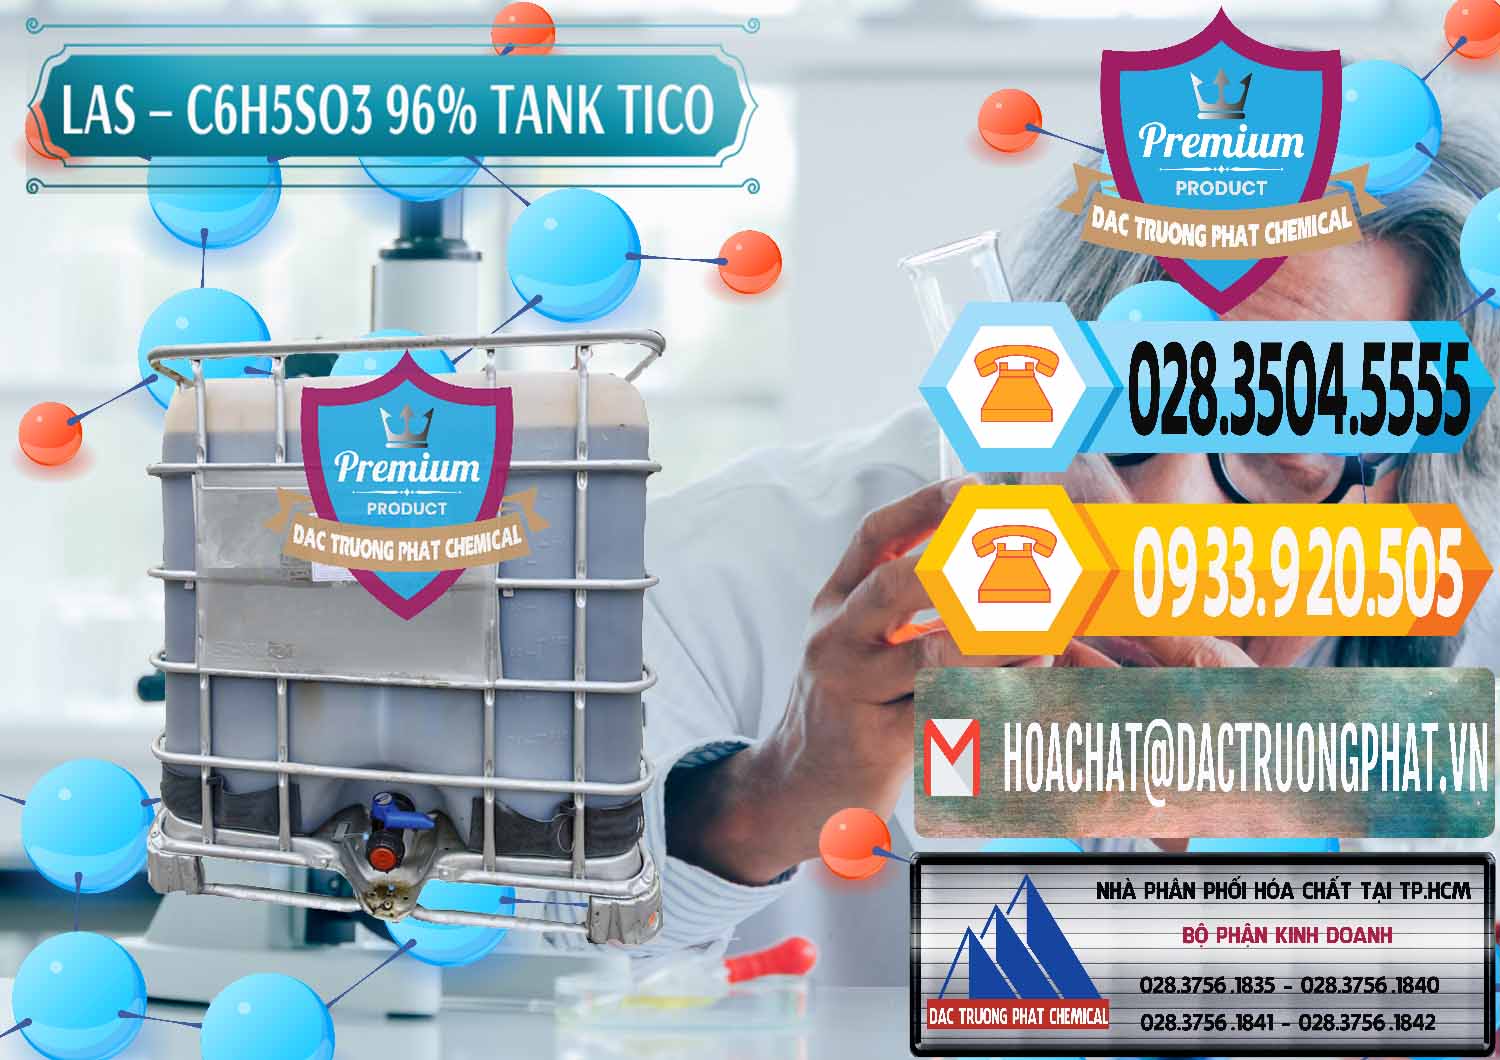 Công ty phân phối - bán Chất tạo bọt Las P Tico Tank IBC Bồn Việt Nam - 0488 - Công ty phân phối & bán hóa chất tại TP.HCM - hoachattayrua.net